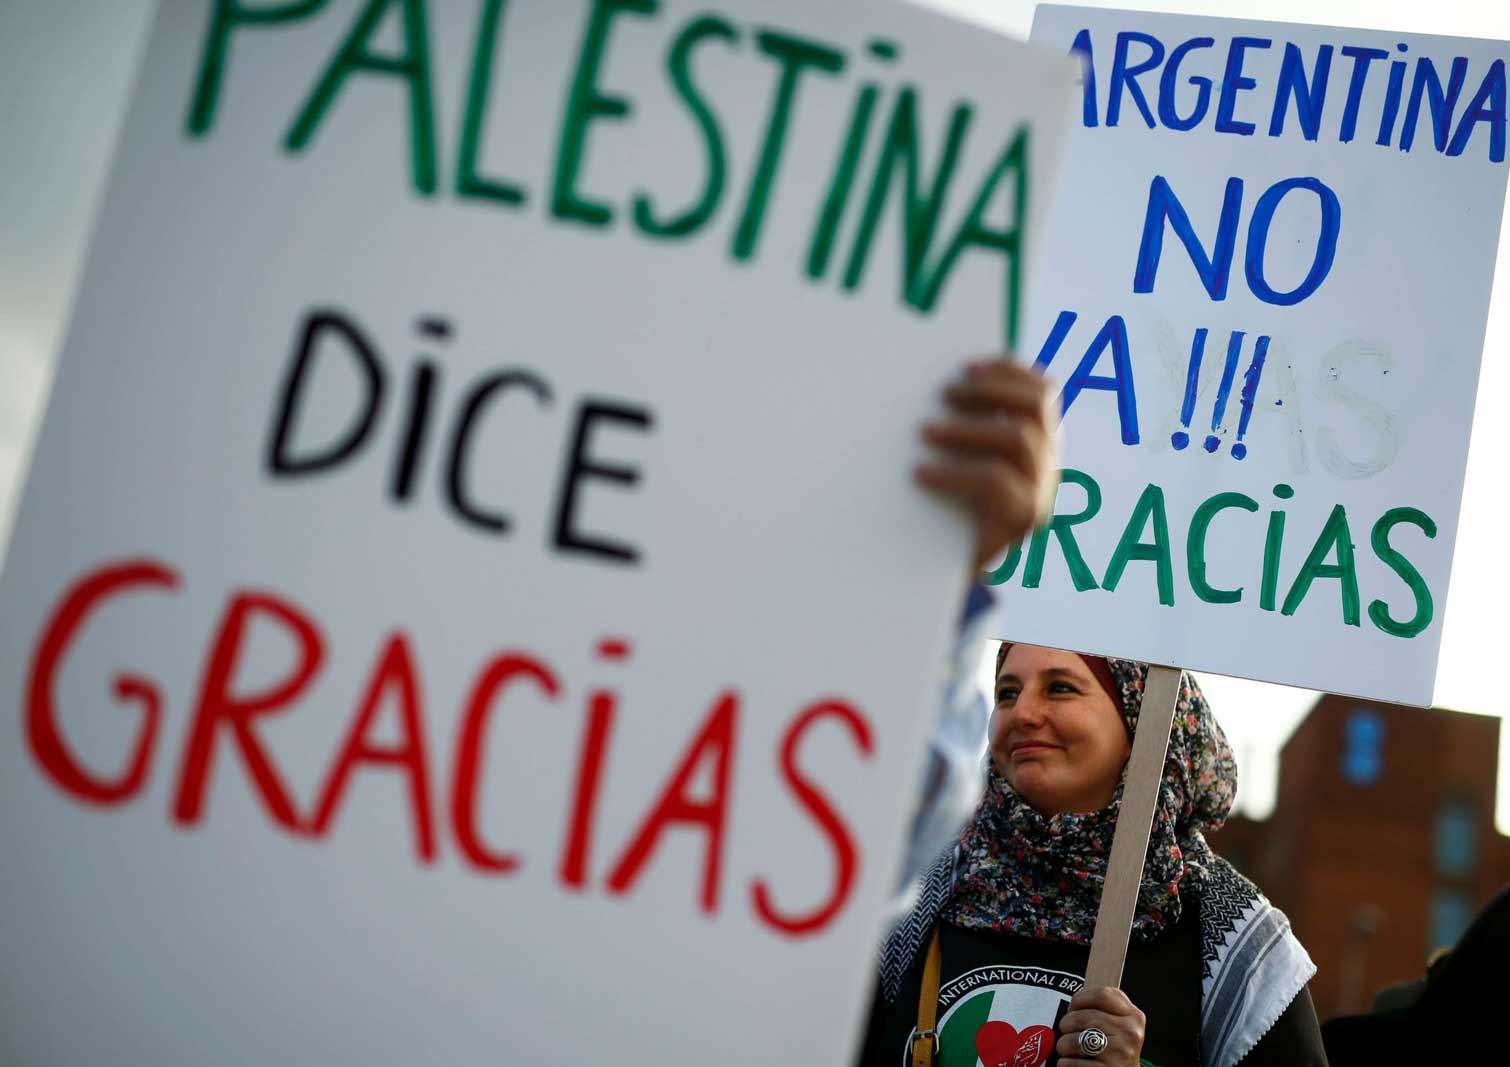 ناشطون فلسطينيون يرفعون لافتات كتب عليها بالإسبانية "فلسطين تقول شكرا" خلال الاحتفال بإلغاء مباراة كرة قدم ودية مقررة بين إسرائيل والأرجنتين